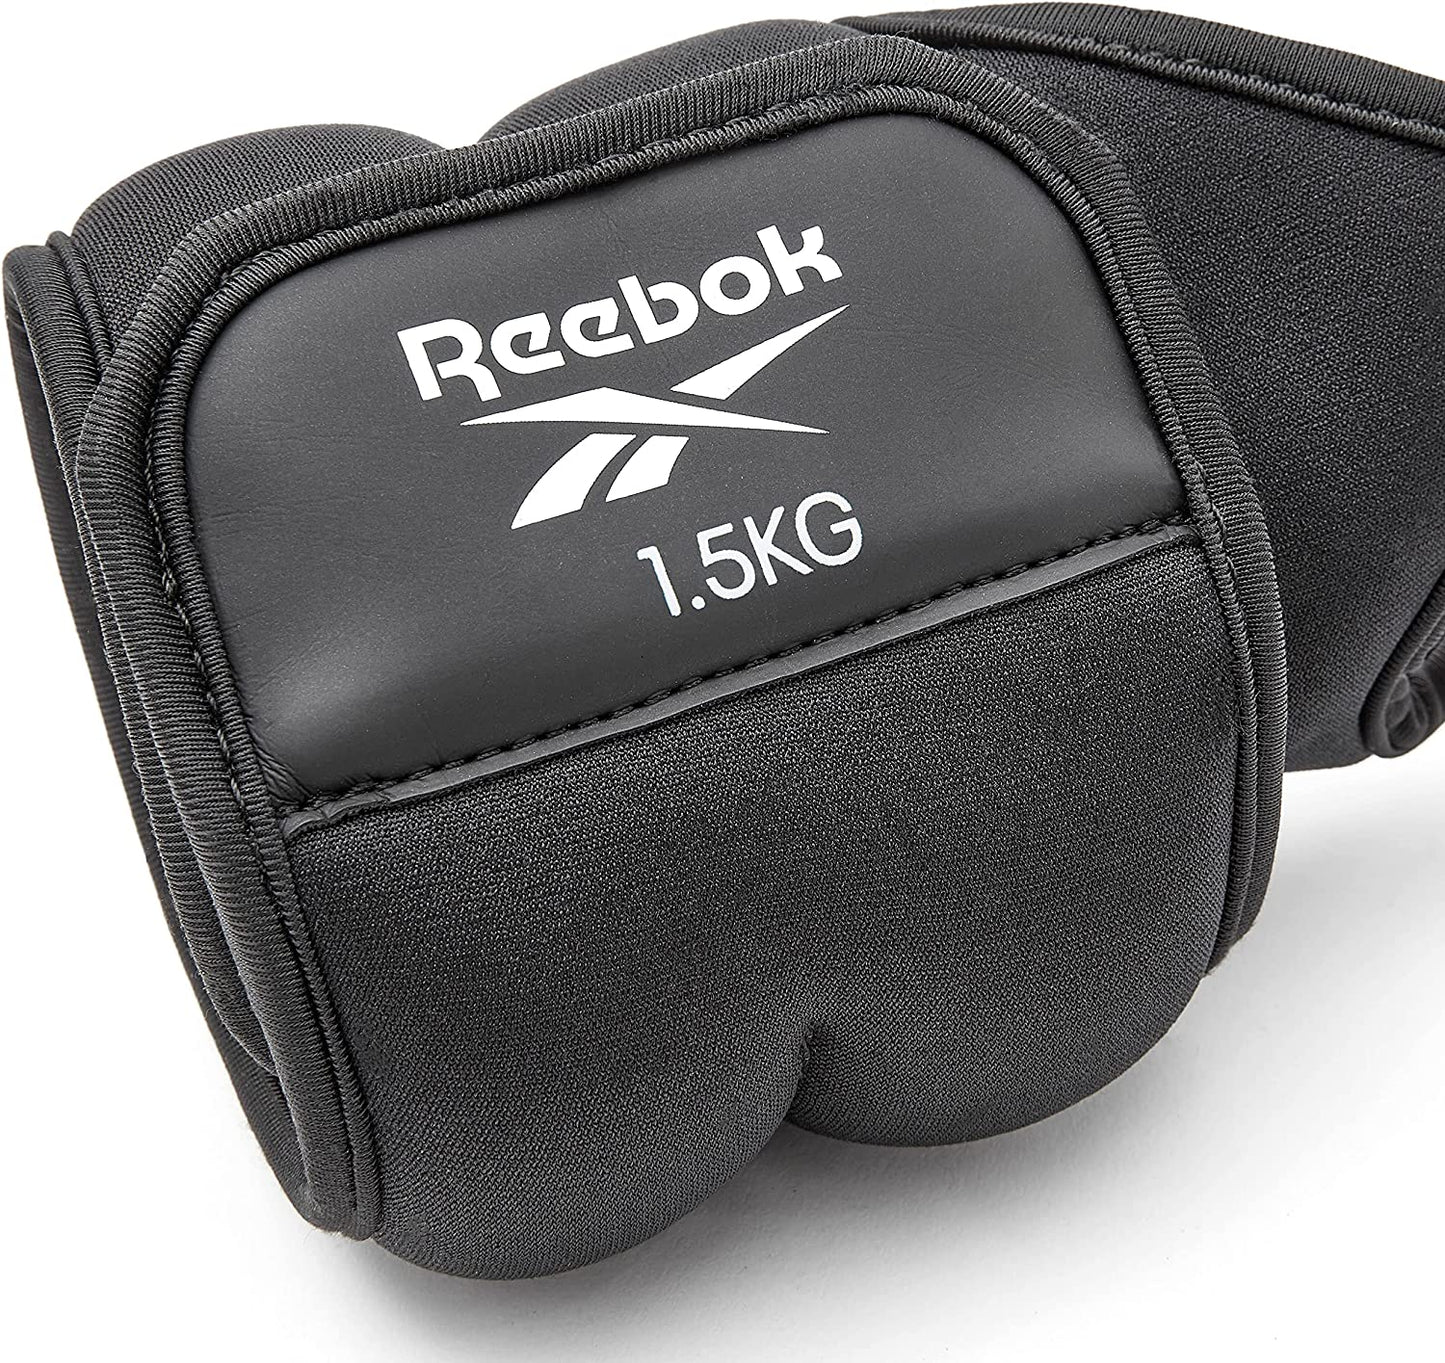 Reebok Wrist Weight, Black/Red - Best Price online Prokicksports.com